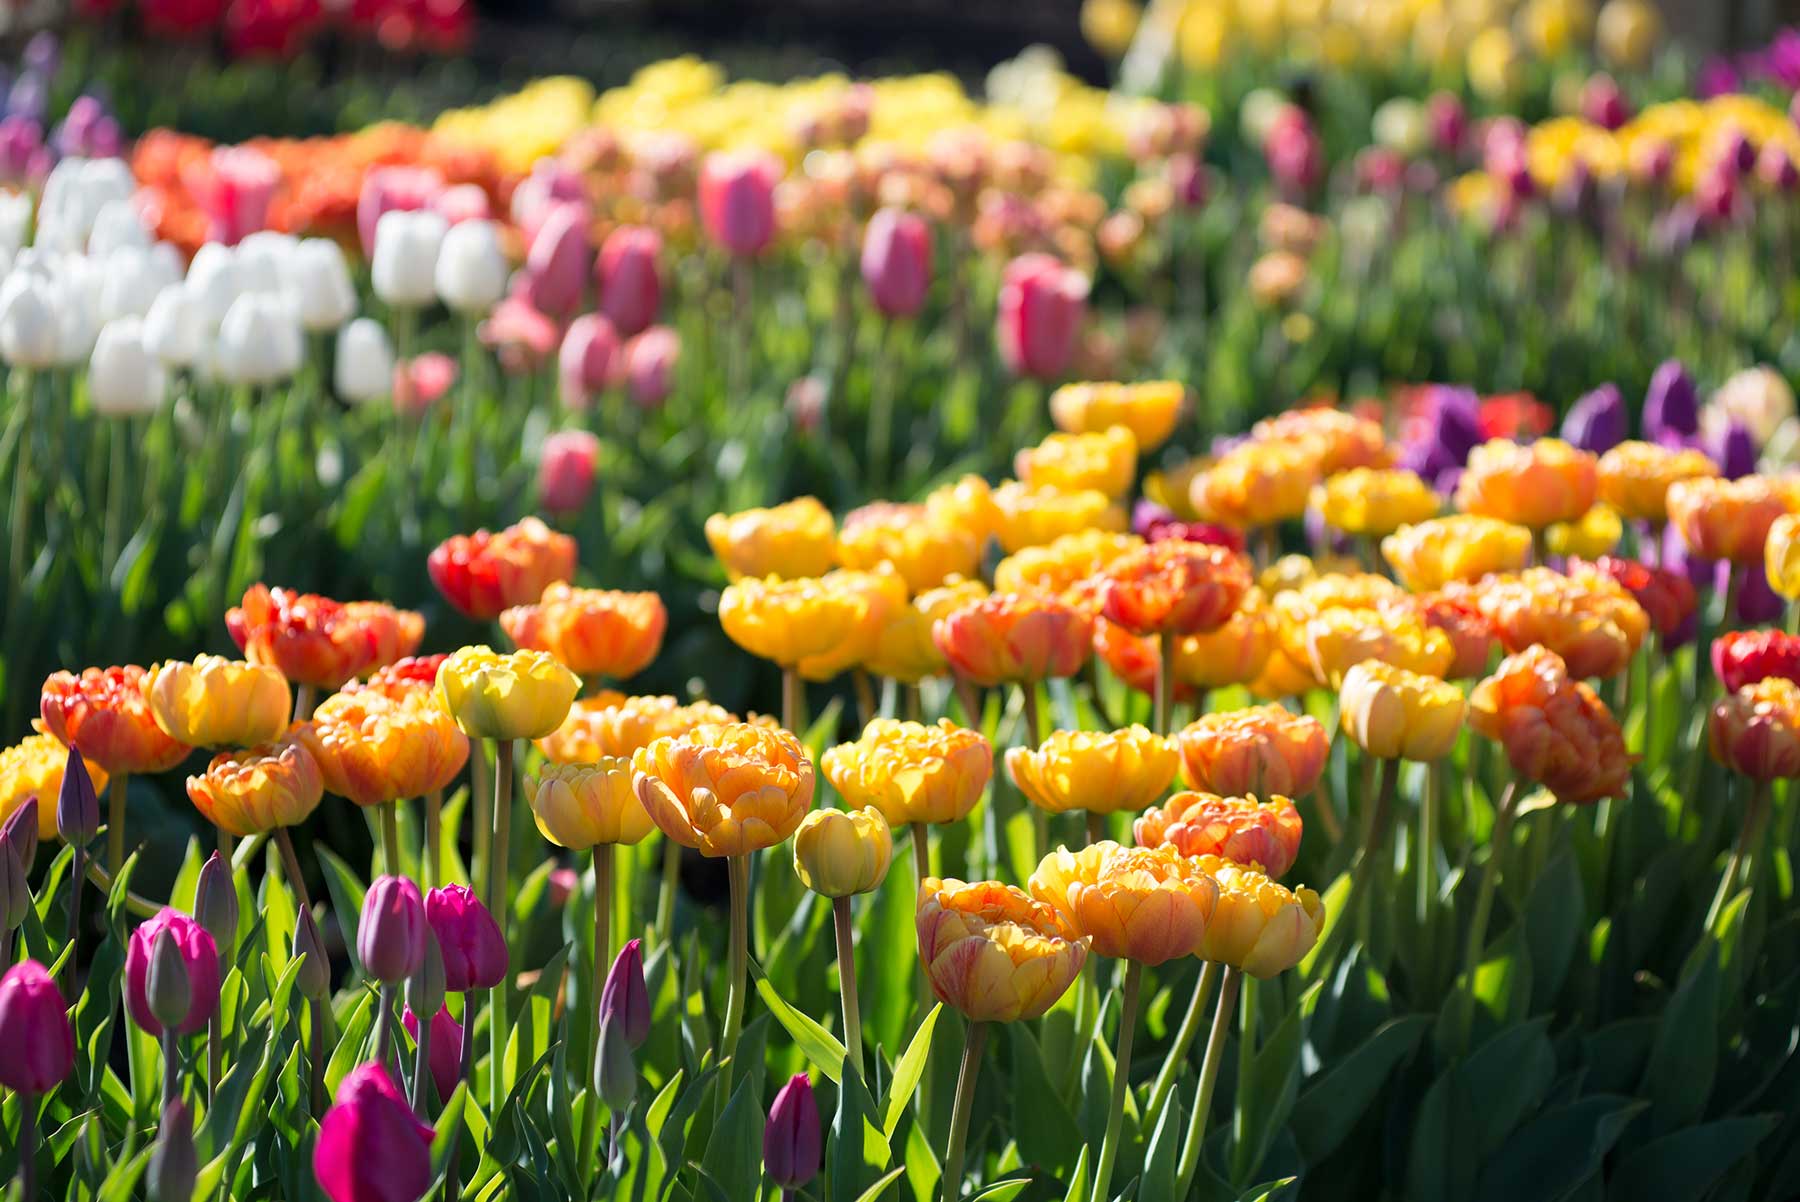 Planting Tulip Bulbs in Your Vegetable Garden - Longfield Gardens